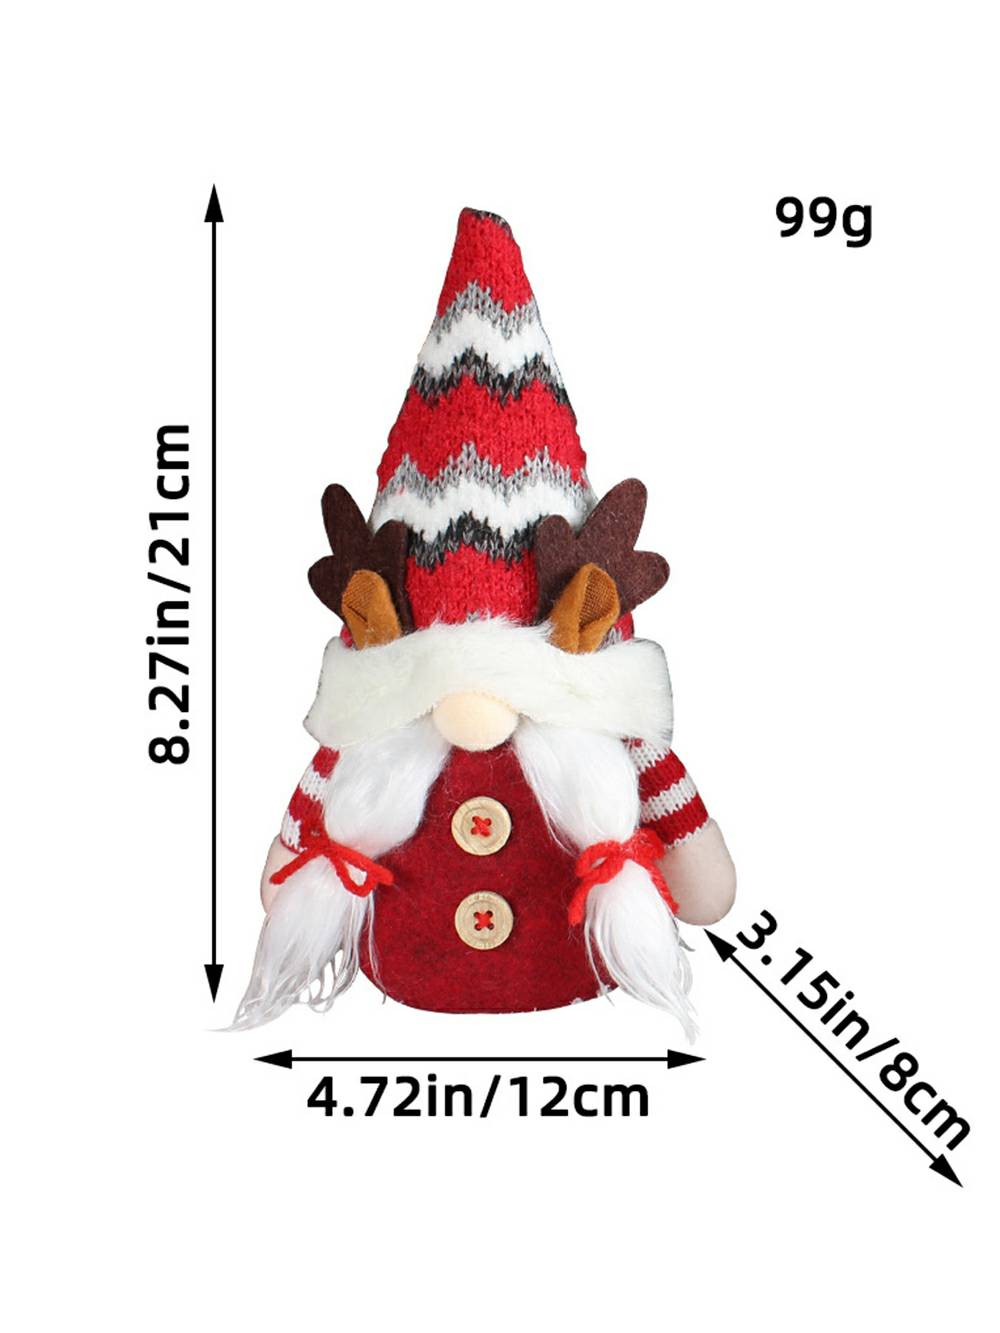 Świąteczna pluszowa lalka Rudolph z reniferem leśnym